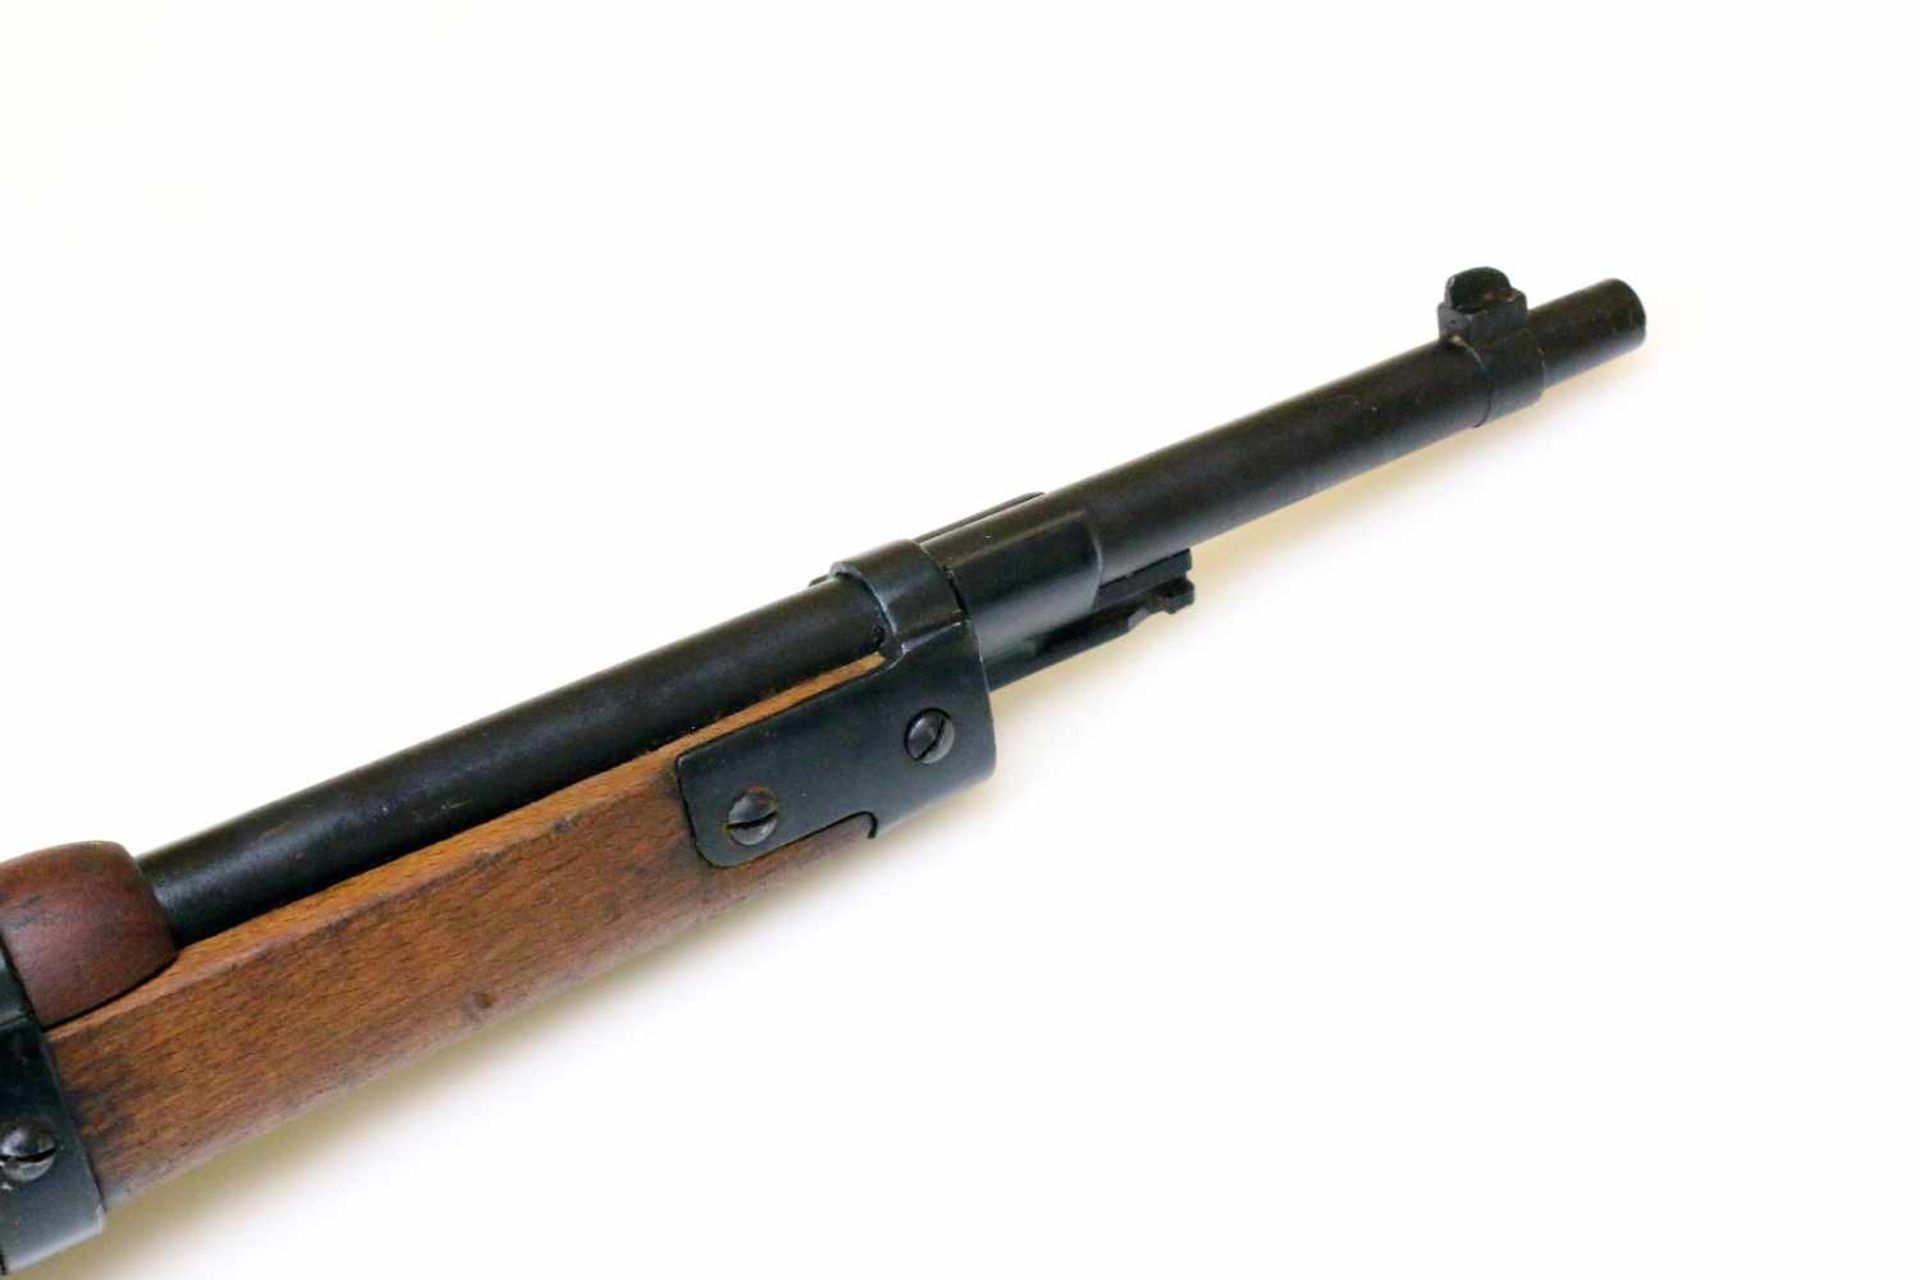 Karabiner Carcano M1938 Cal. 7,35mm carc., Lauf blank, Nr. Y871. Waffe gefertigt 1939 in Terni. - Bild 5 aus 12